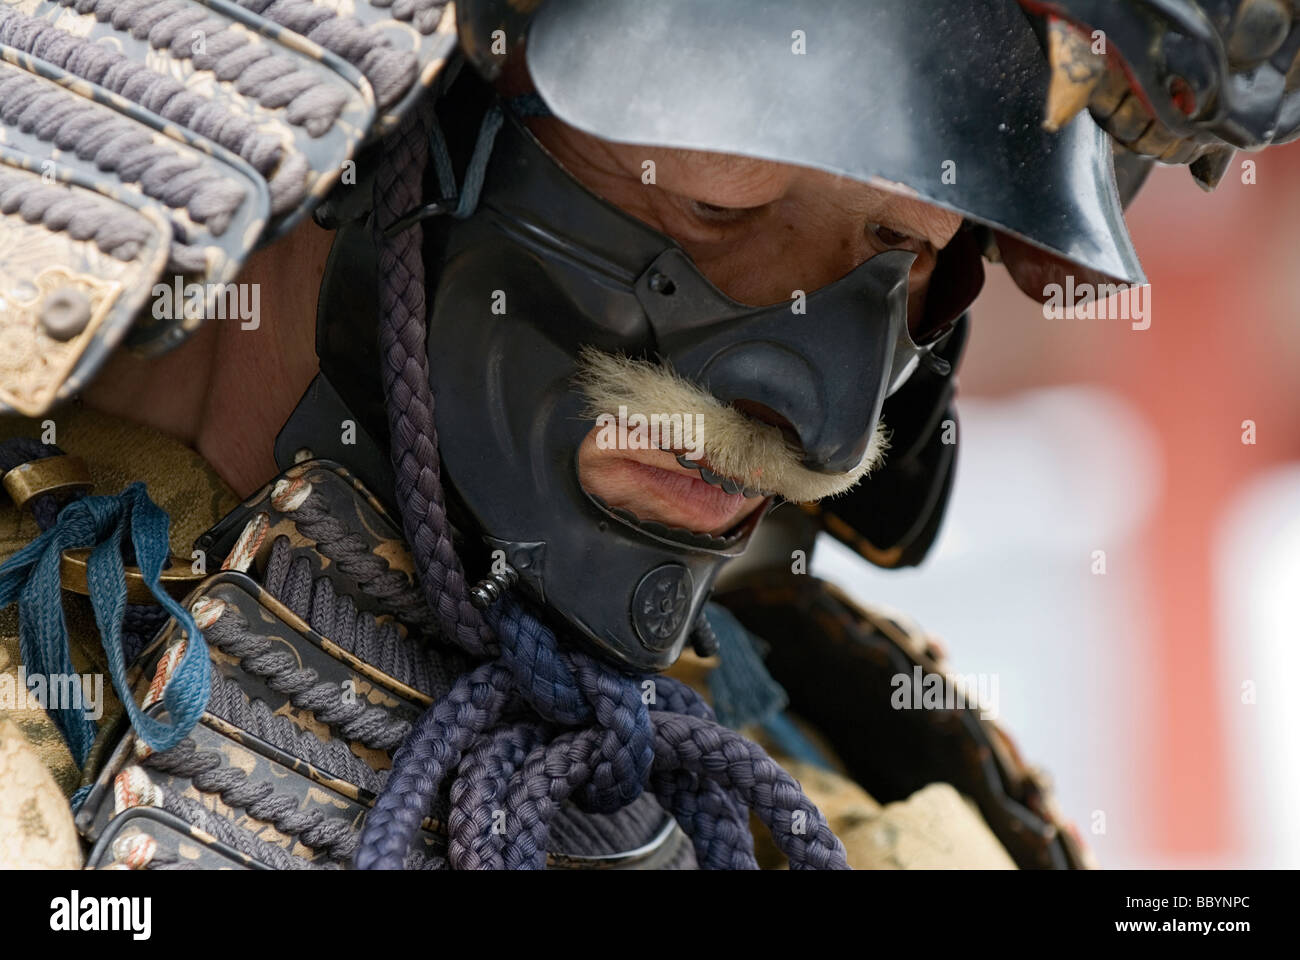 Mann gekleidet in voller Samurai-Rüstung komplett mit Kabuto Helm und Mempo  Gesichtsmaske, den Feind einzuschüchtern Stockfotografie - Alamy